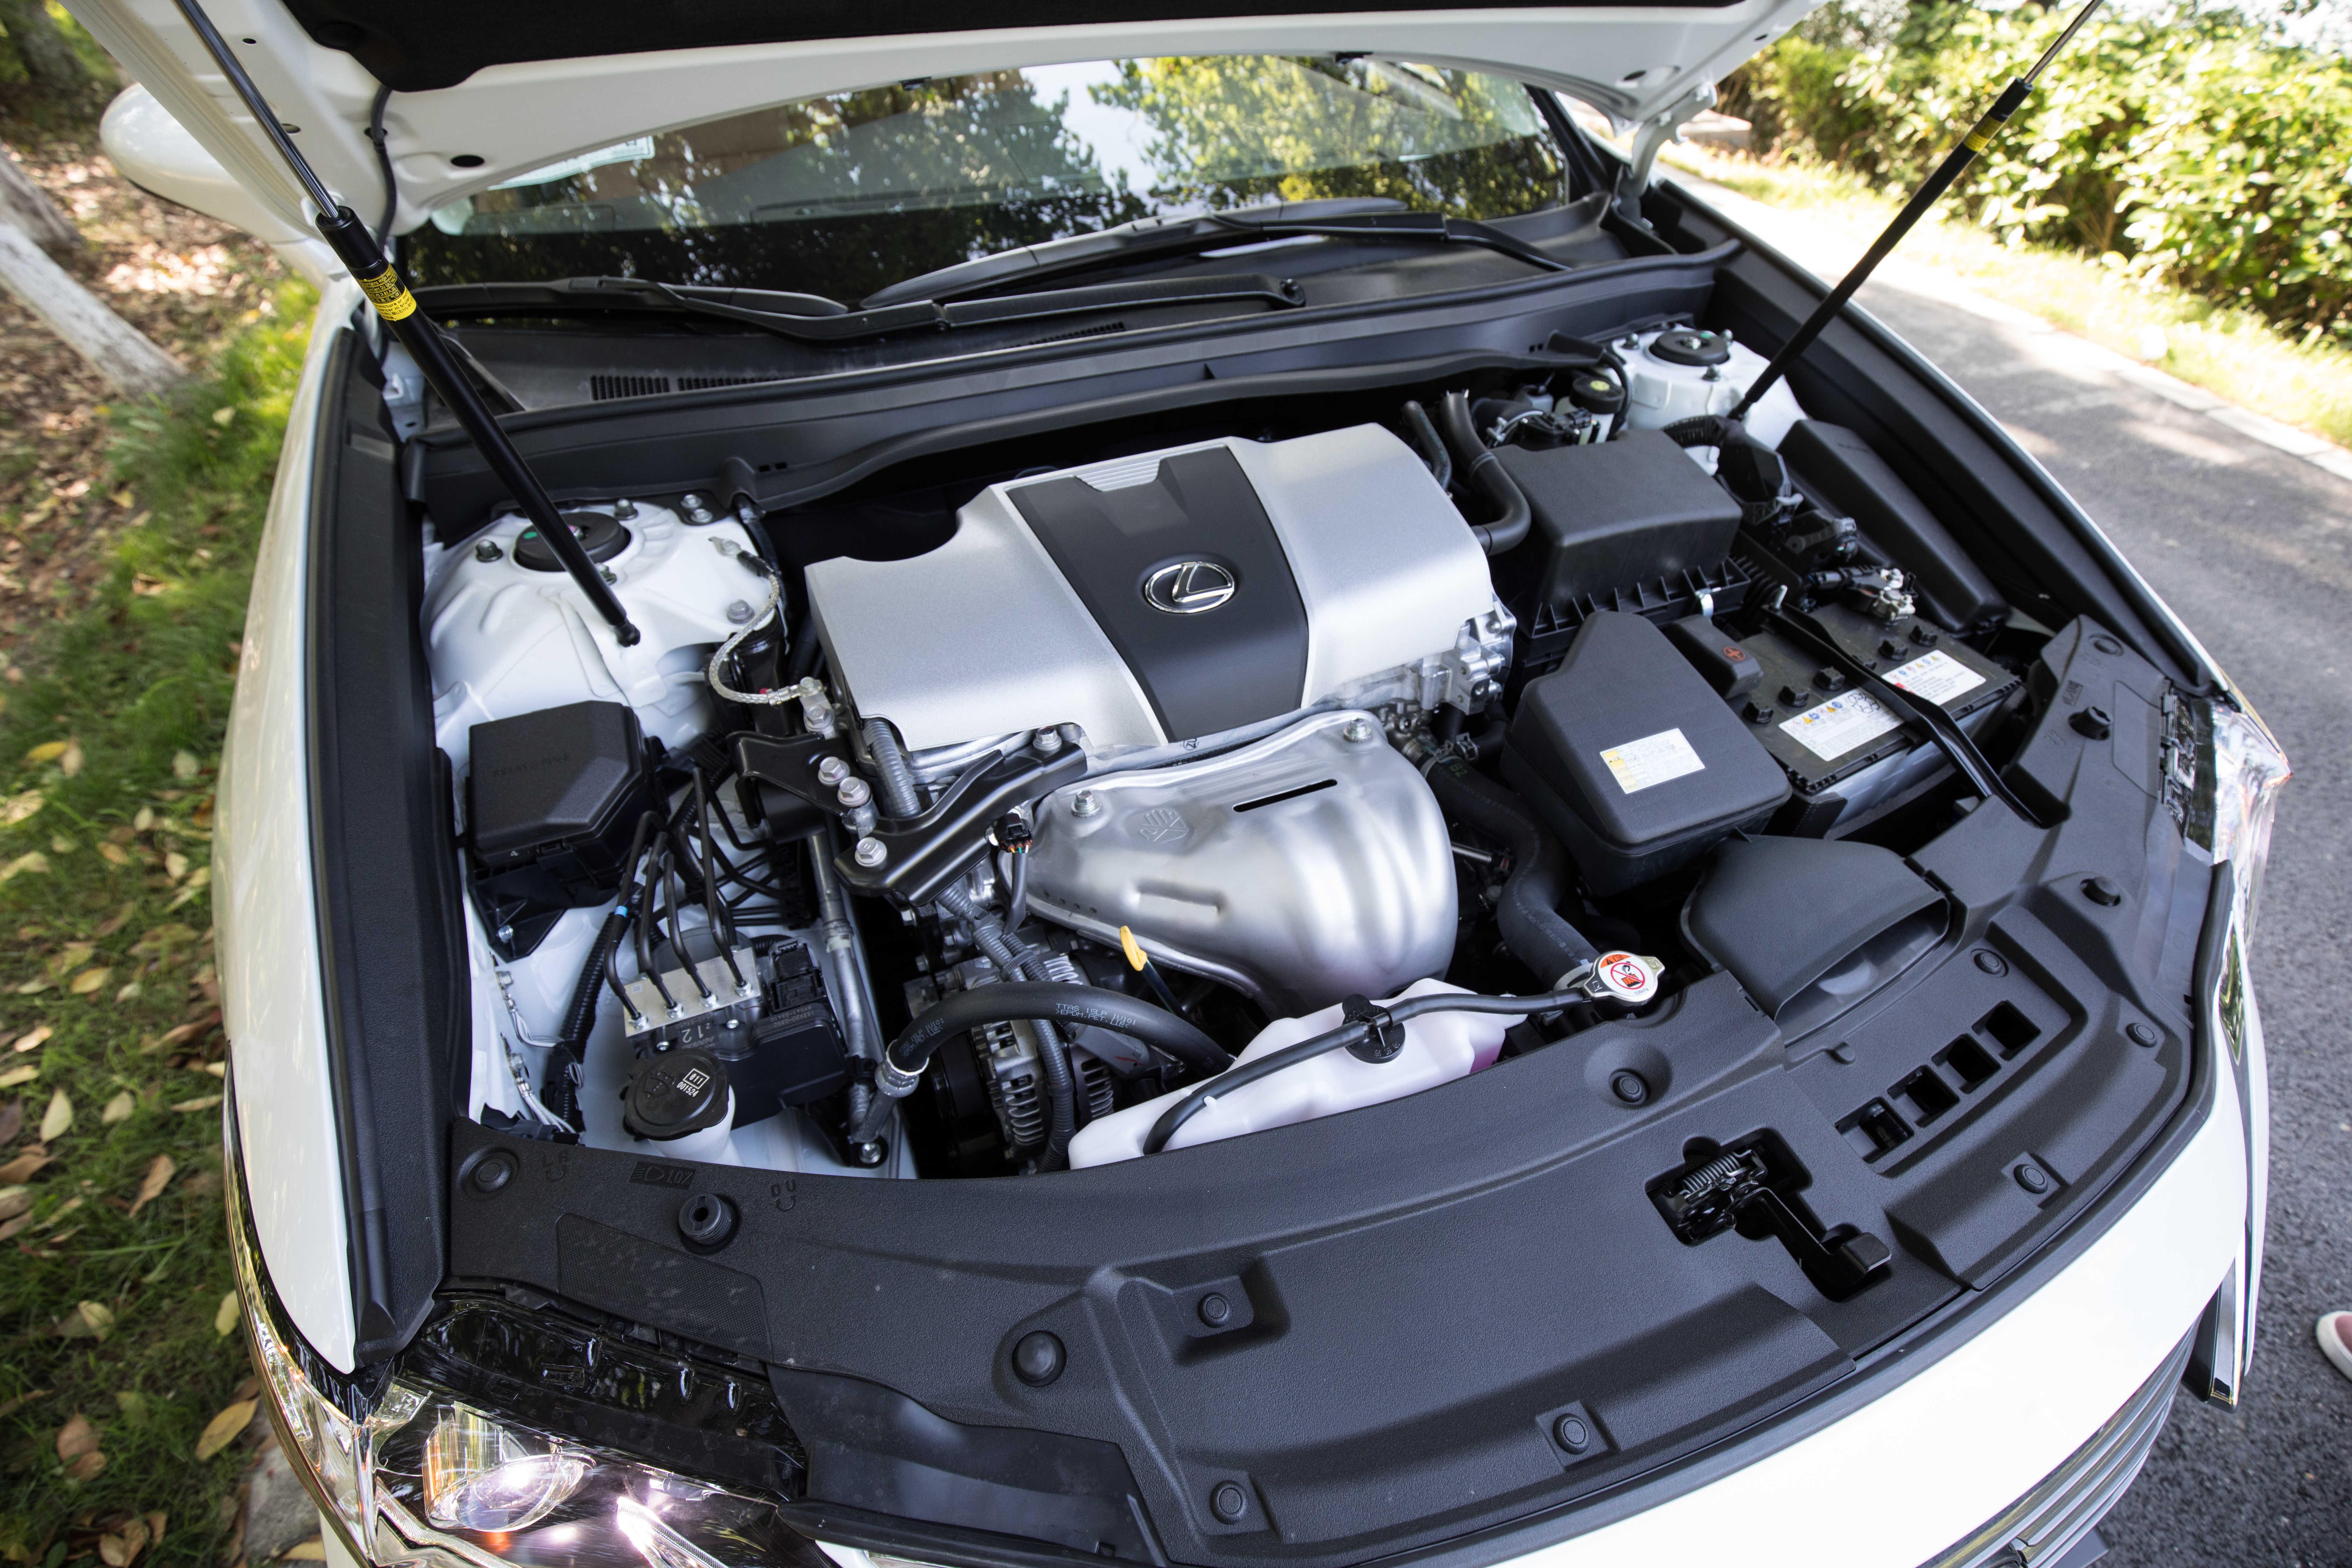 雷克萨斯es200搭载的4缸双喷射自然吸气发动机,最大功率123千瓦(167